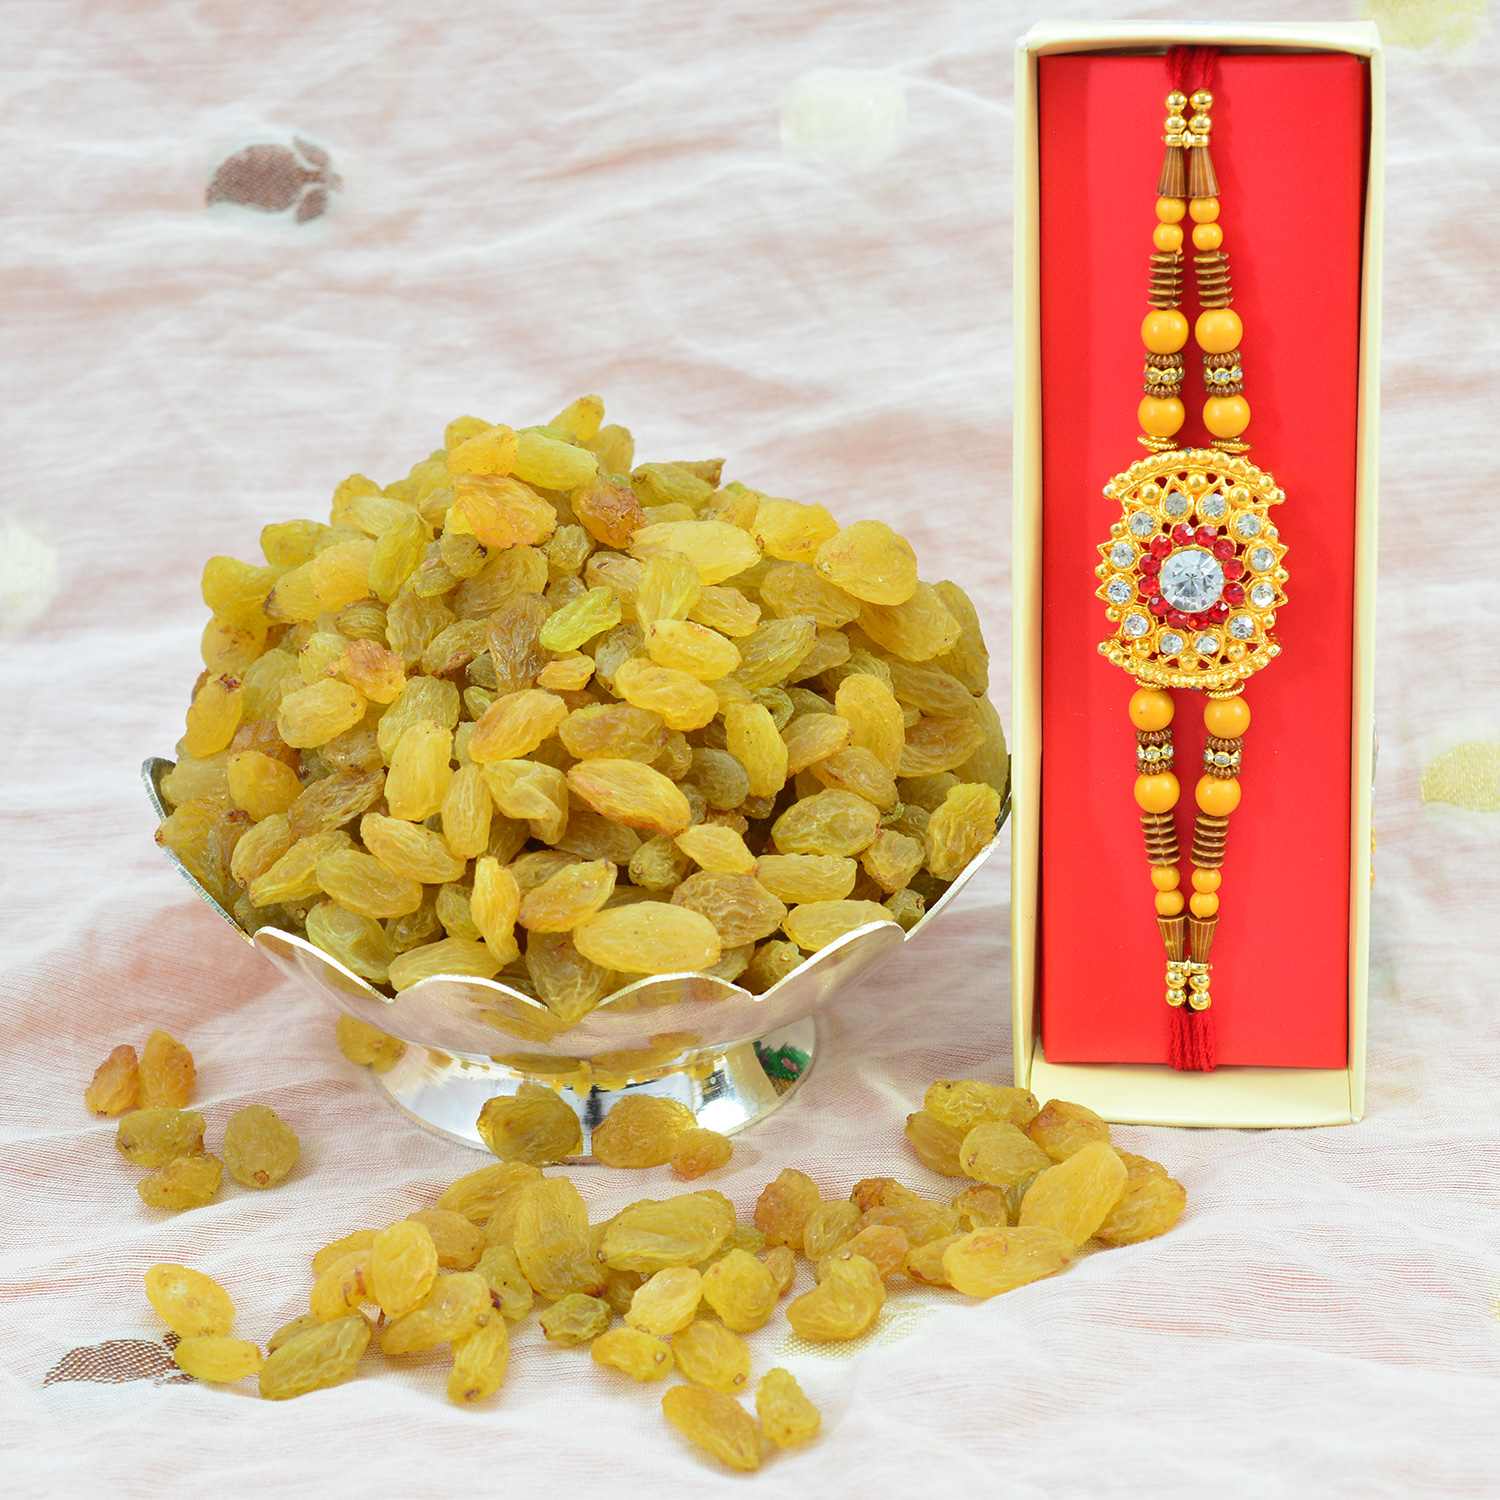 Rakhi with Dry Fruit - Golden Brother Rakhi with Kishmish Dry Fruit